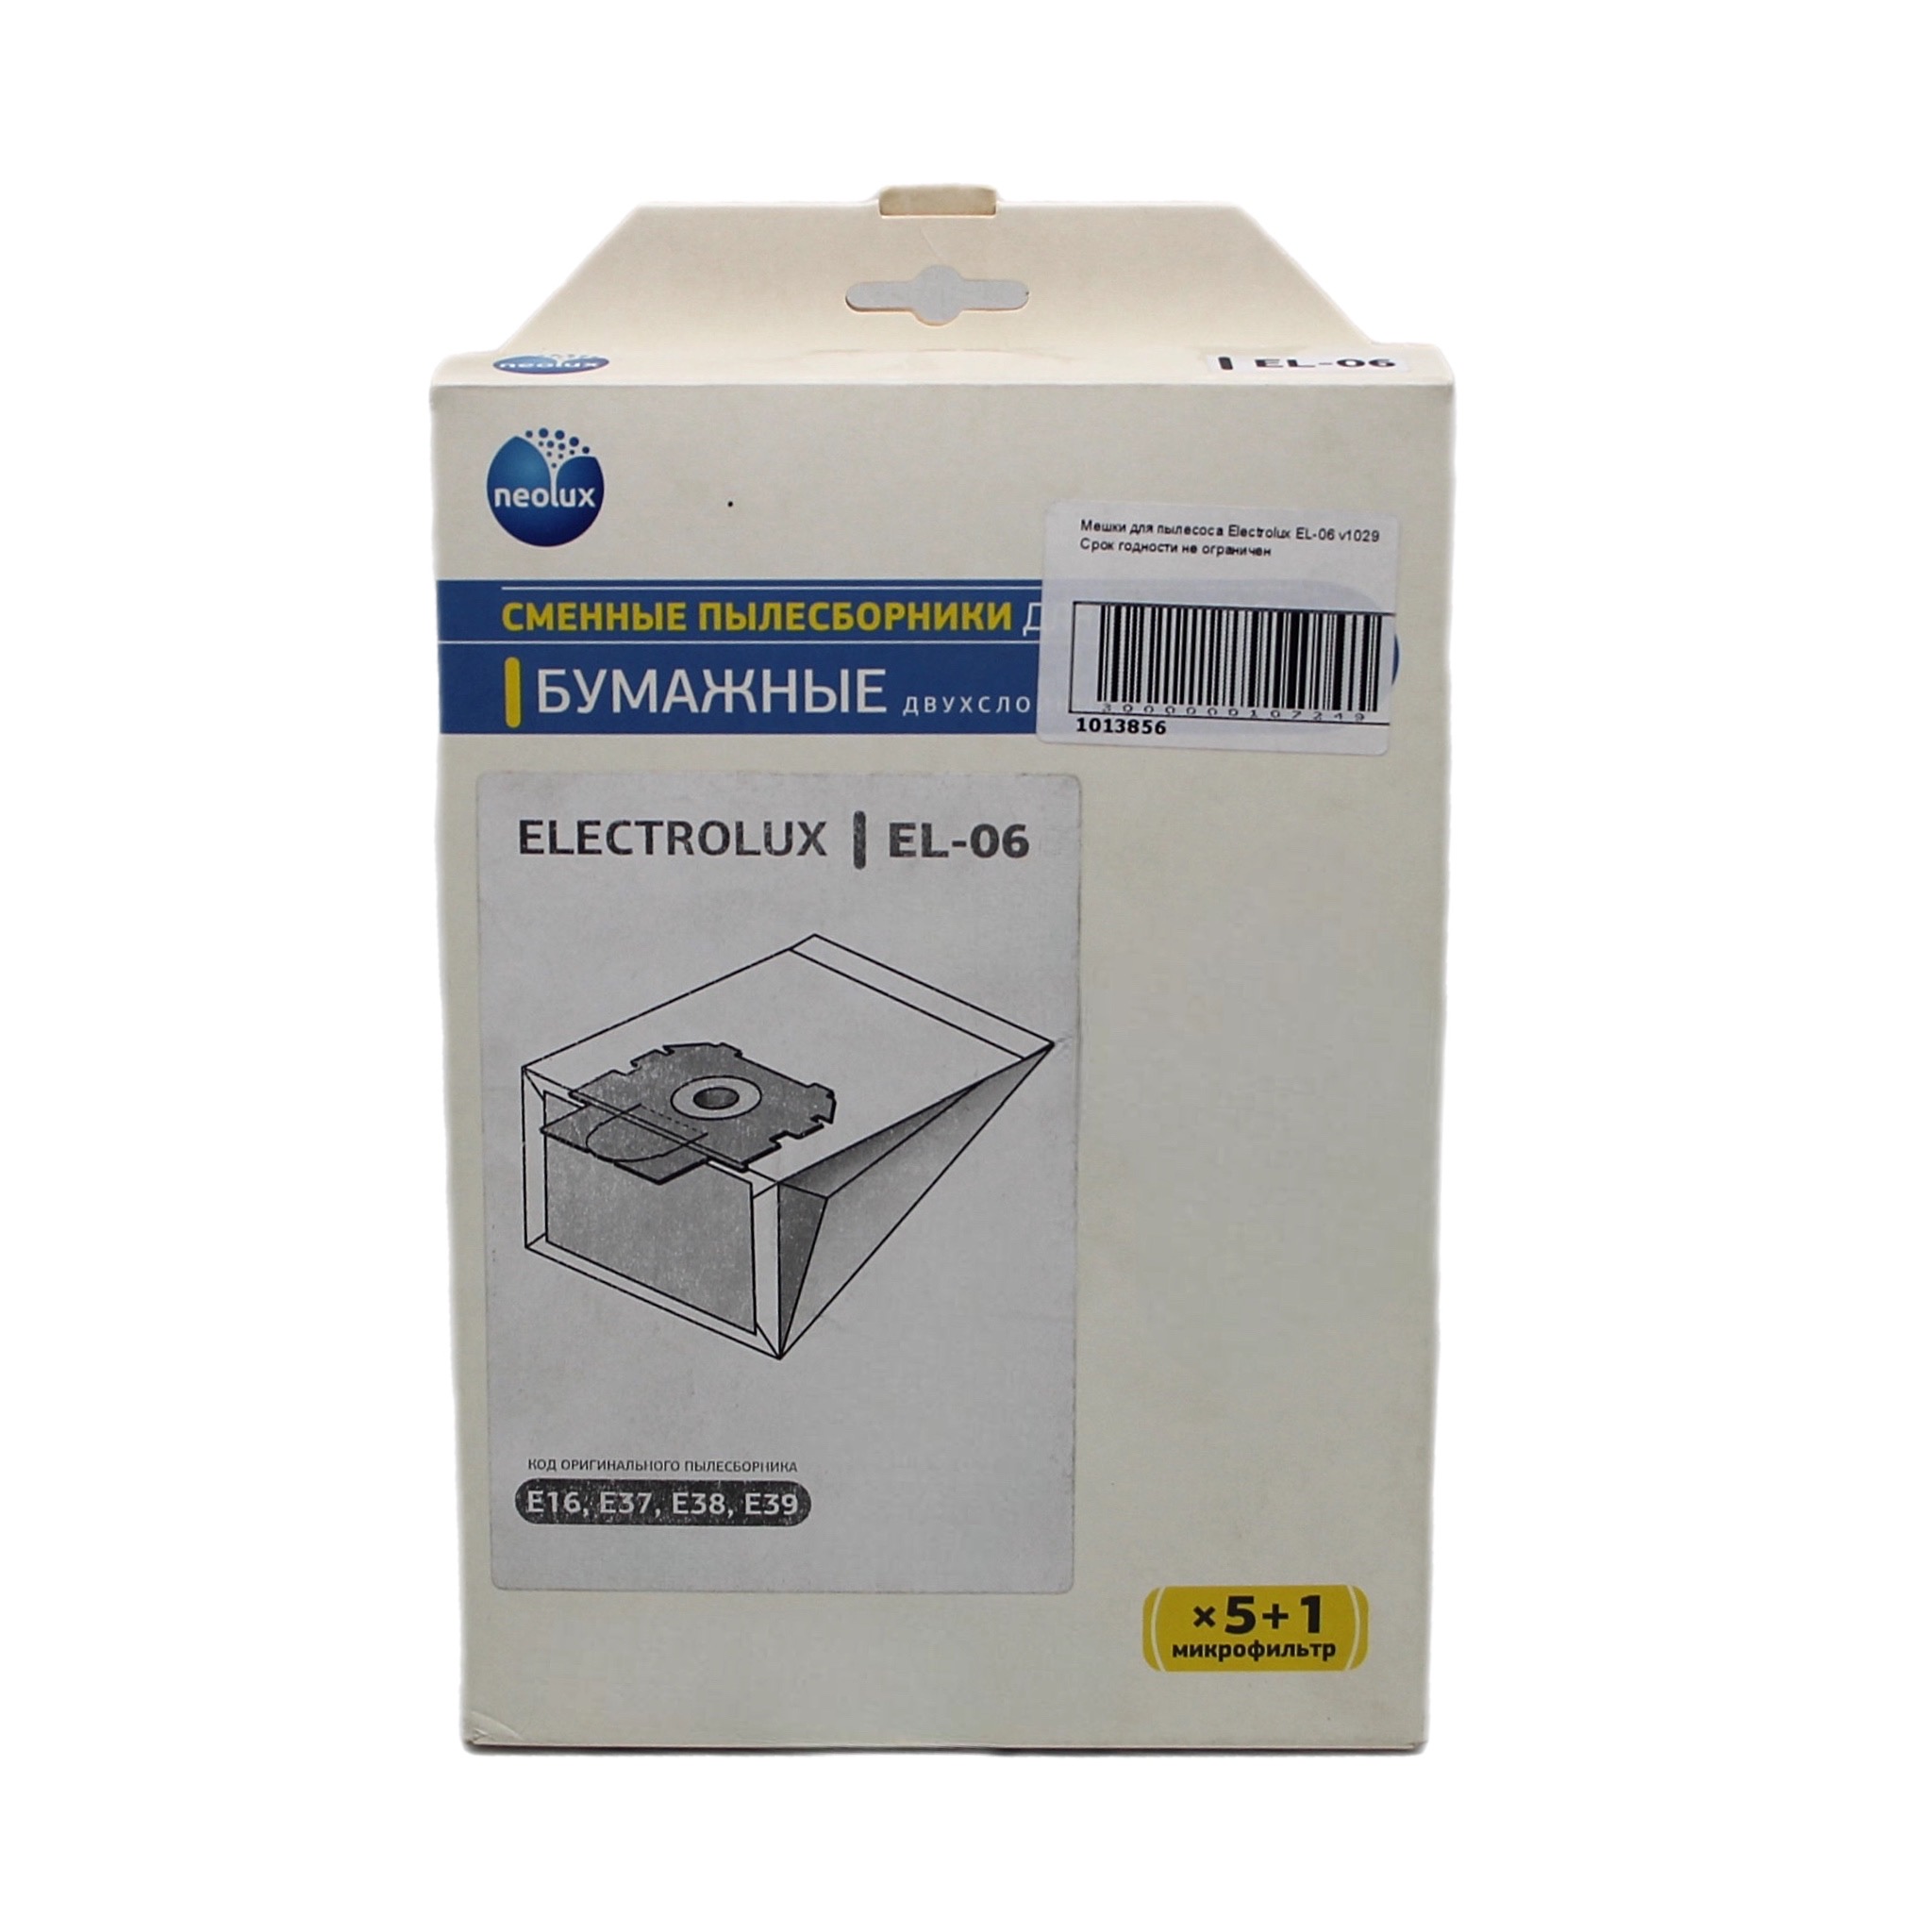 Мешок для бытового пылесоса OEM EL-06 пылесборники бумажные topperr lg 2 5шт 1 микрофильтр